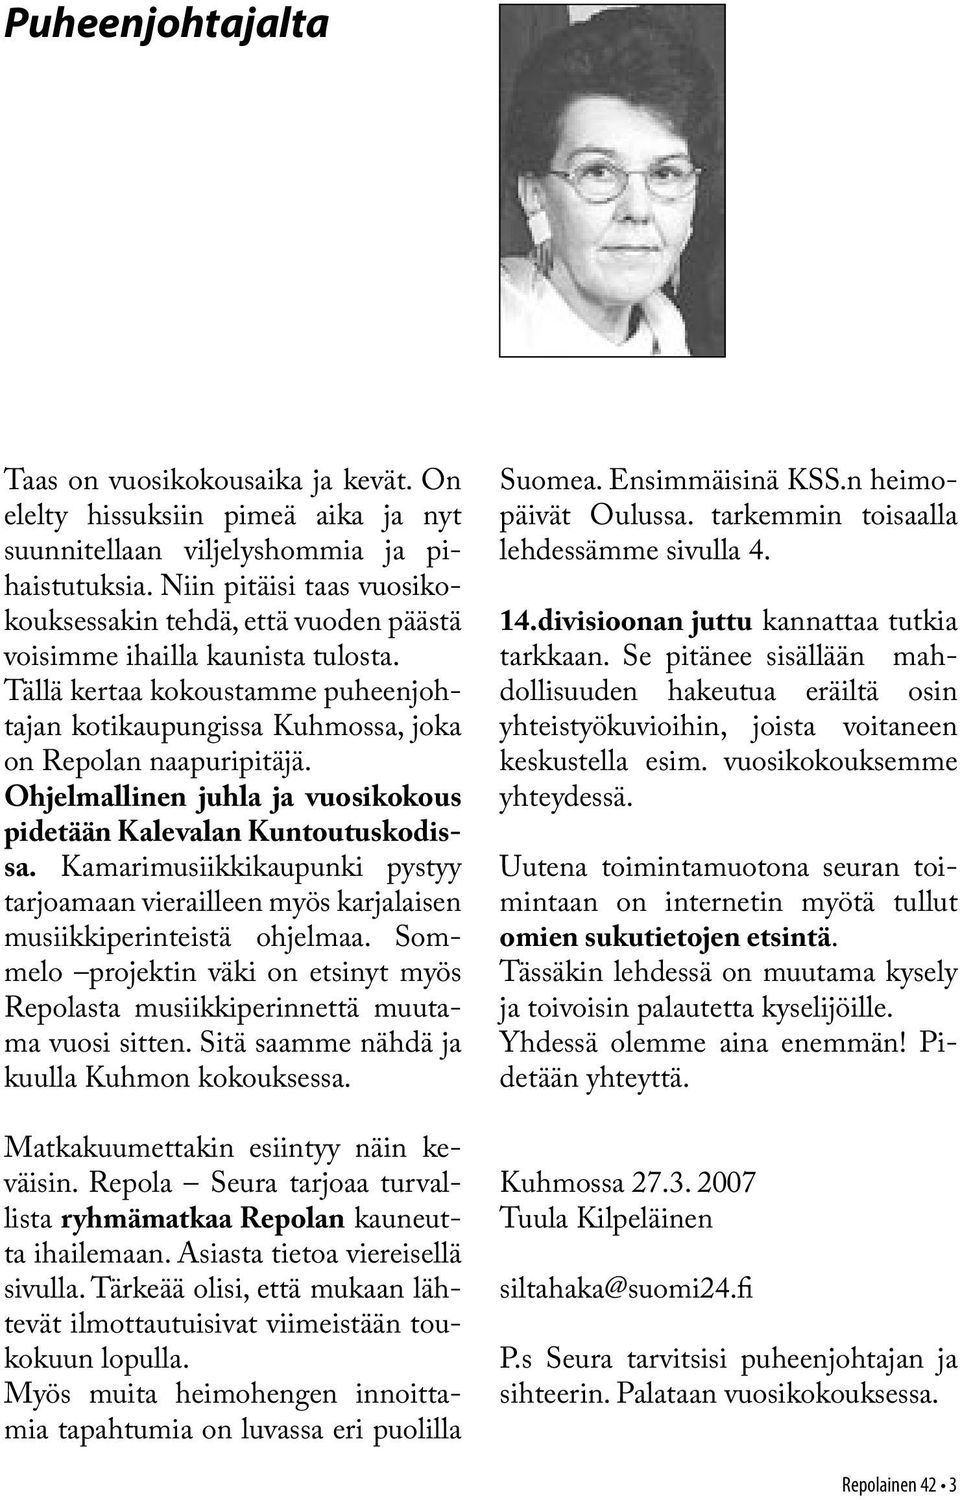 Ohjelmallinen juhla ja vuosikokous pidetään Kalevalan Kuntoutuskodissa. Kamarimusiikkikaupunki pystyy tarjoamaan vierailleen myös karjalaisen musiikkiperinteistä ohjelmaa.